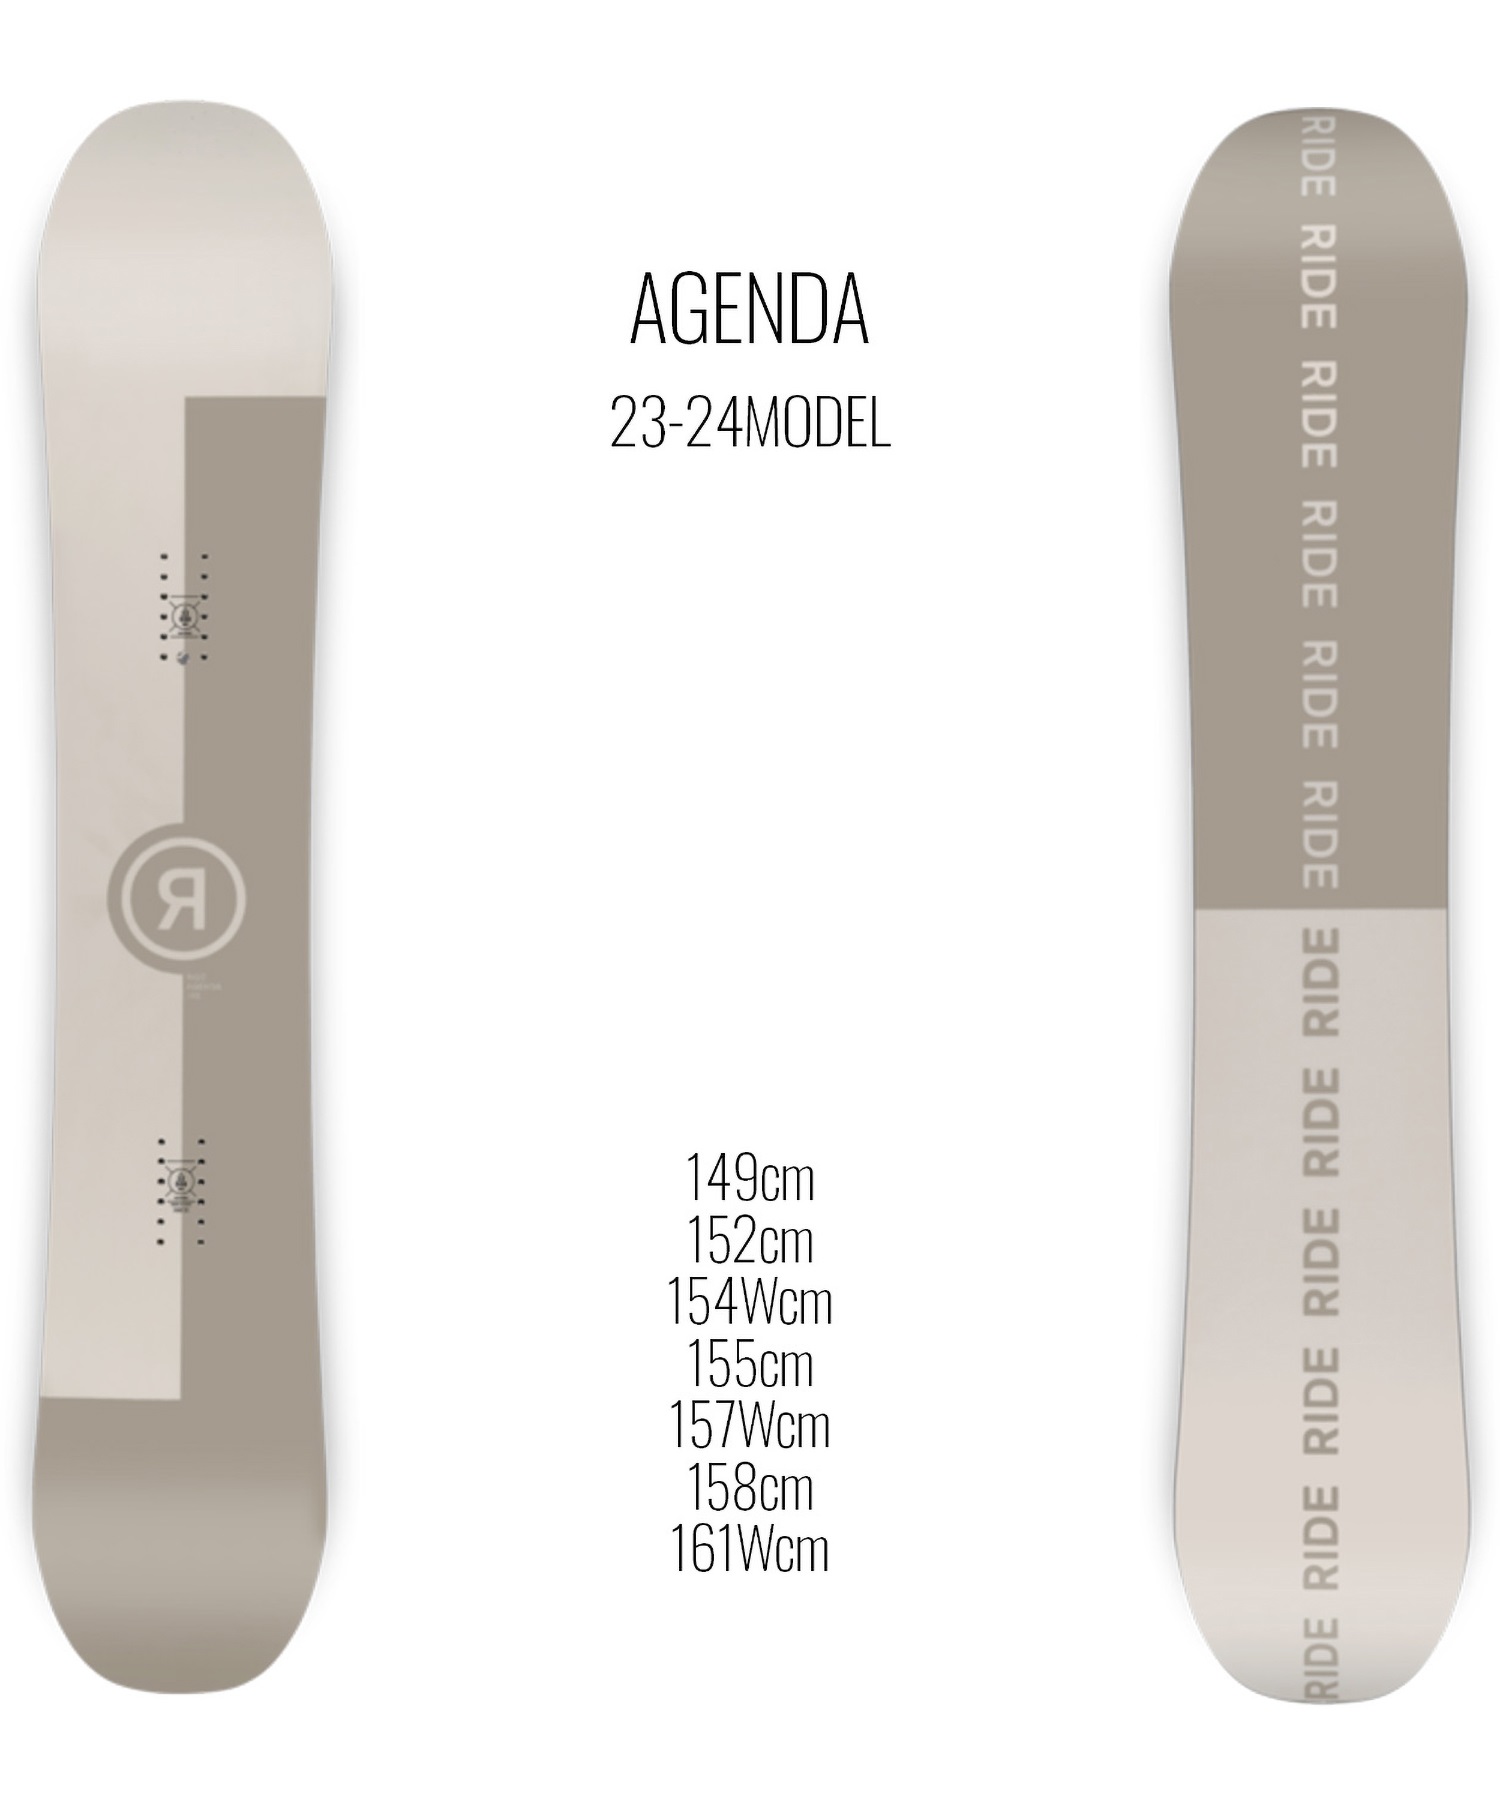 スノーボード 板 メンズ RIDE ライド AGENDA 23-24モデル ムラサキスポーツ KK C2(AGENDA-149cm)